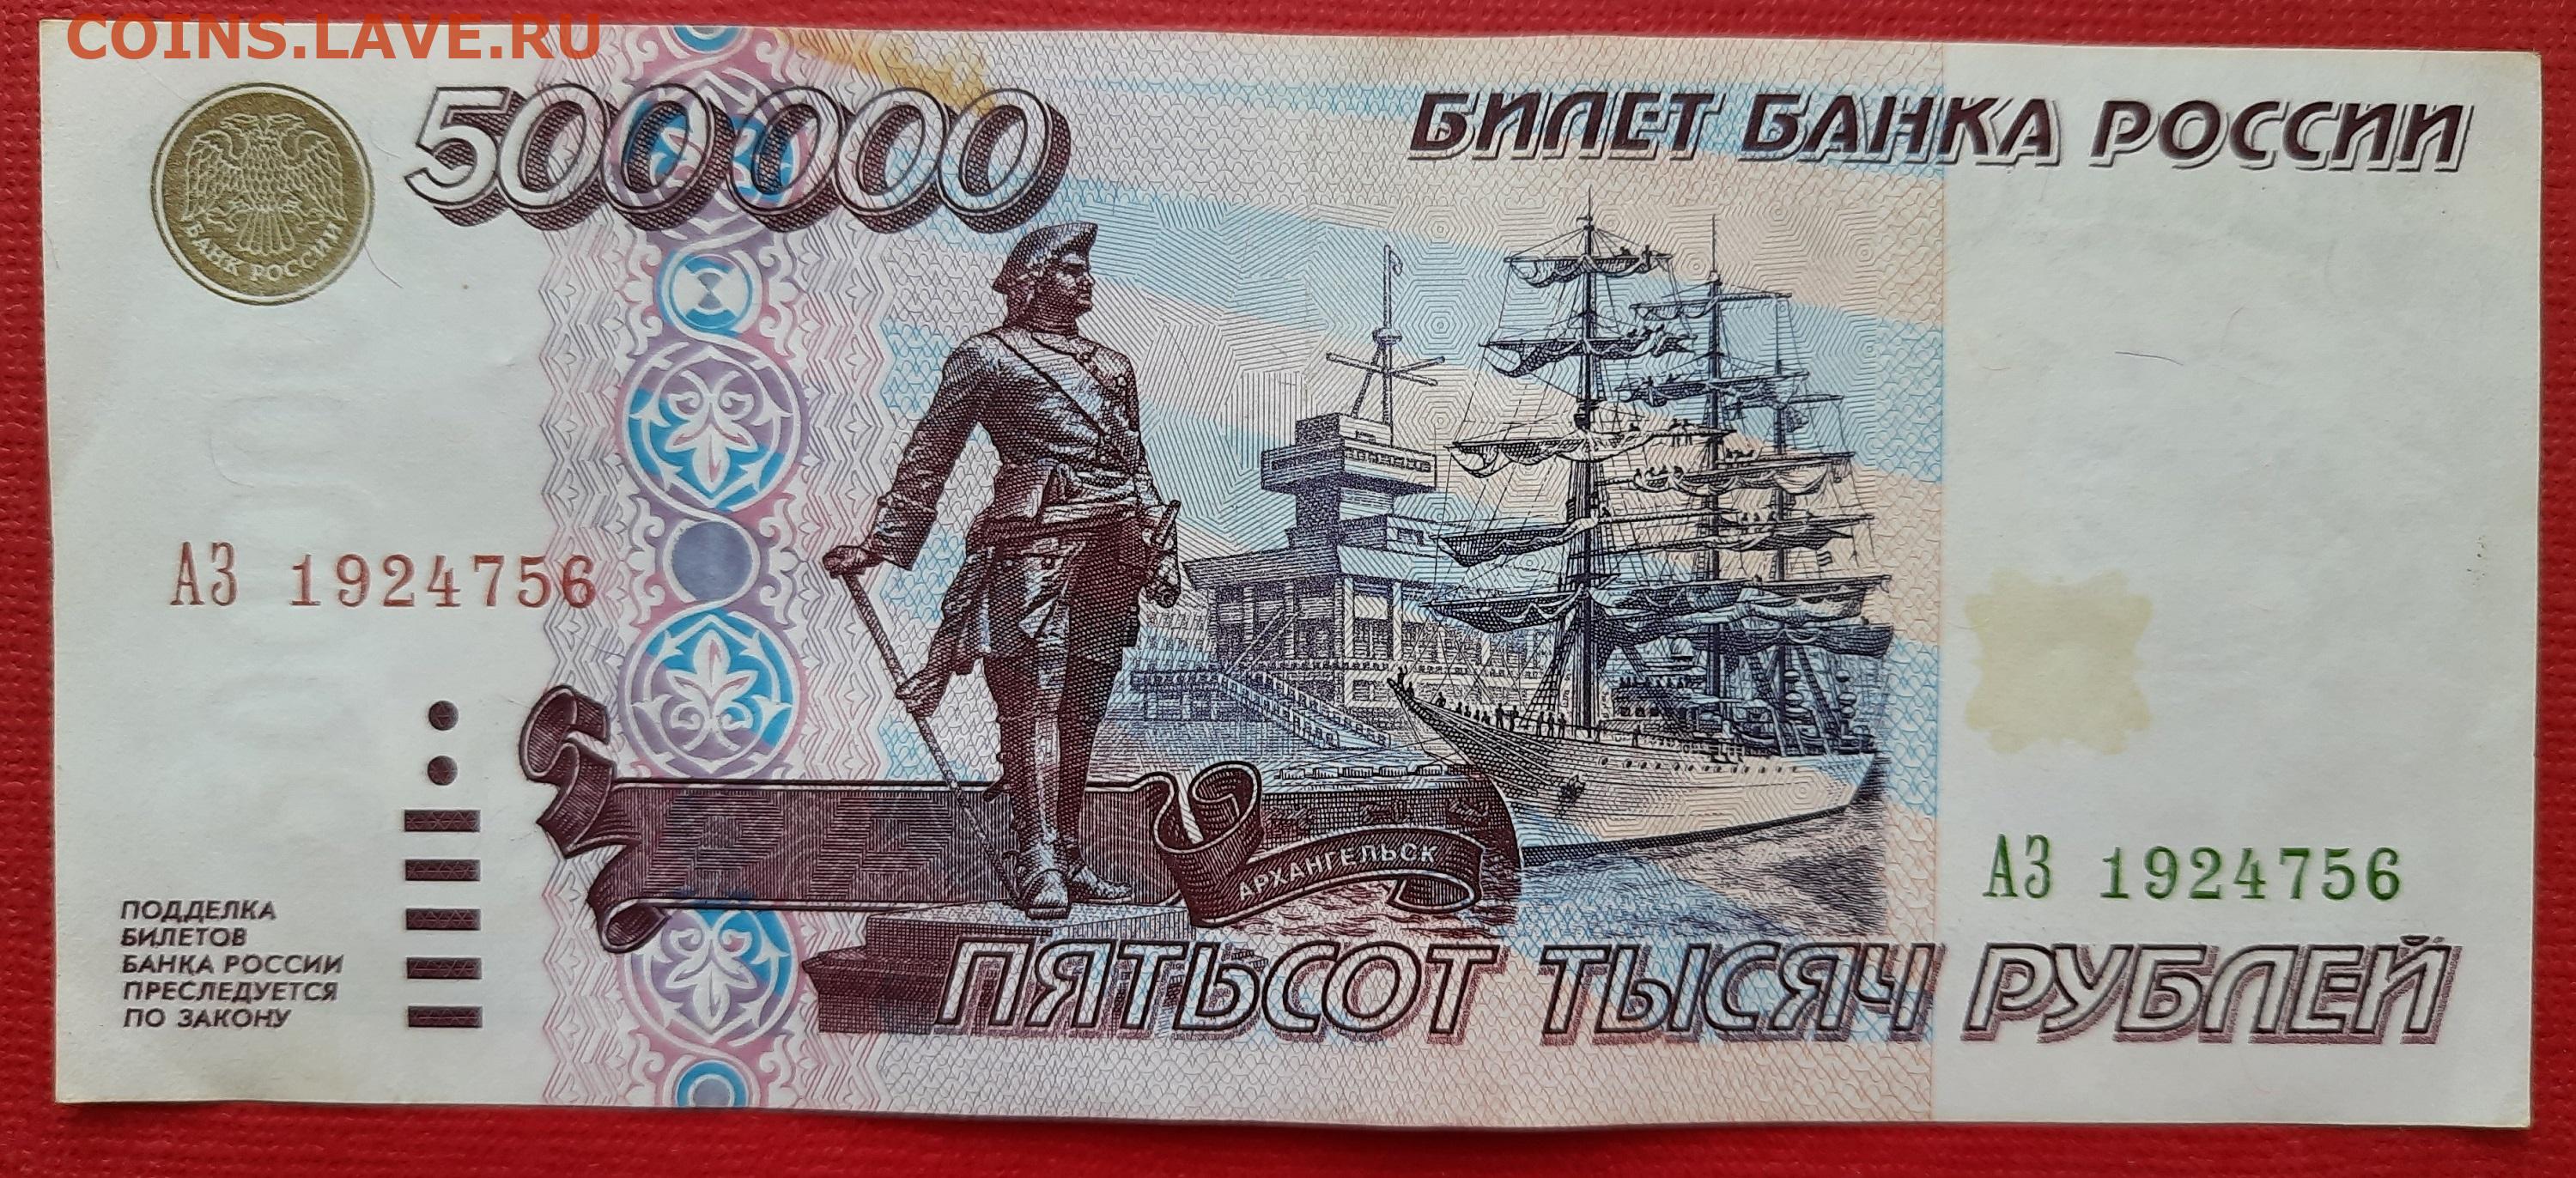 1 5 с 500 рублей